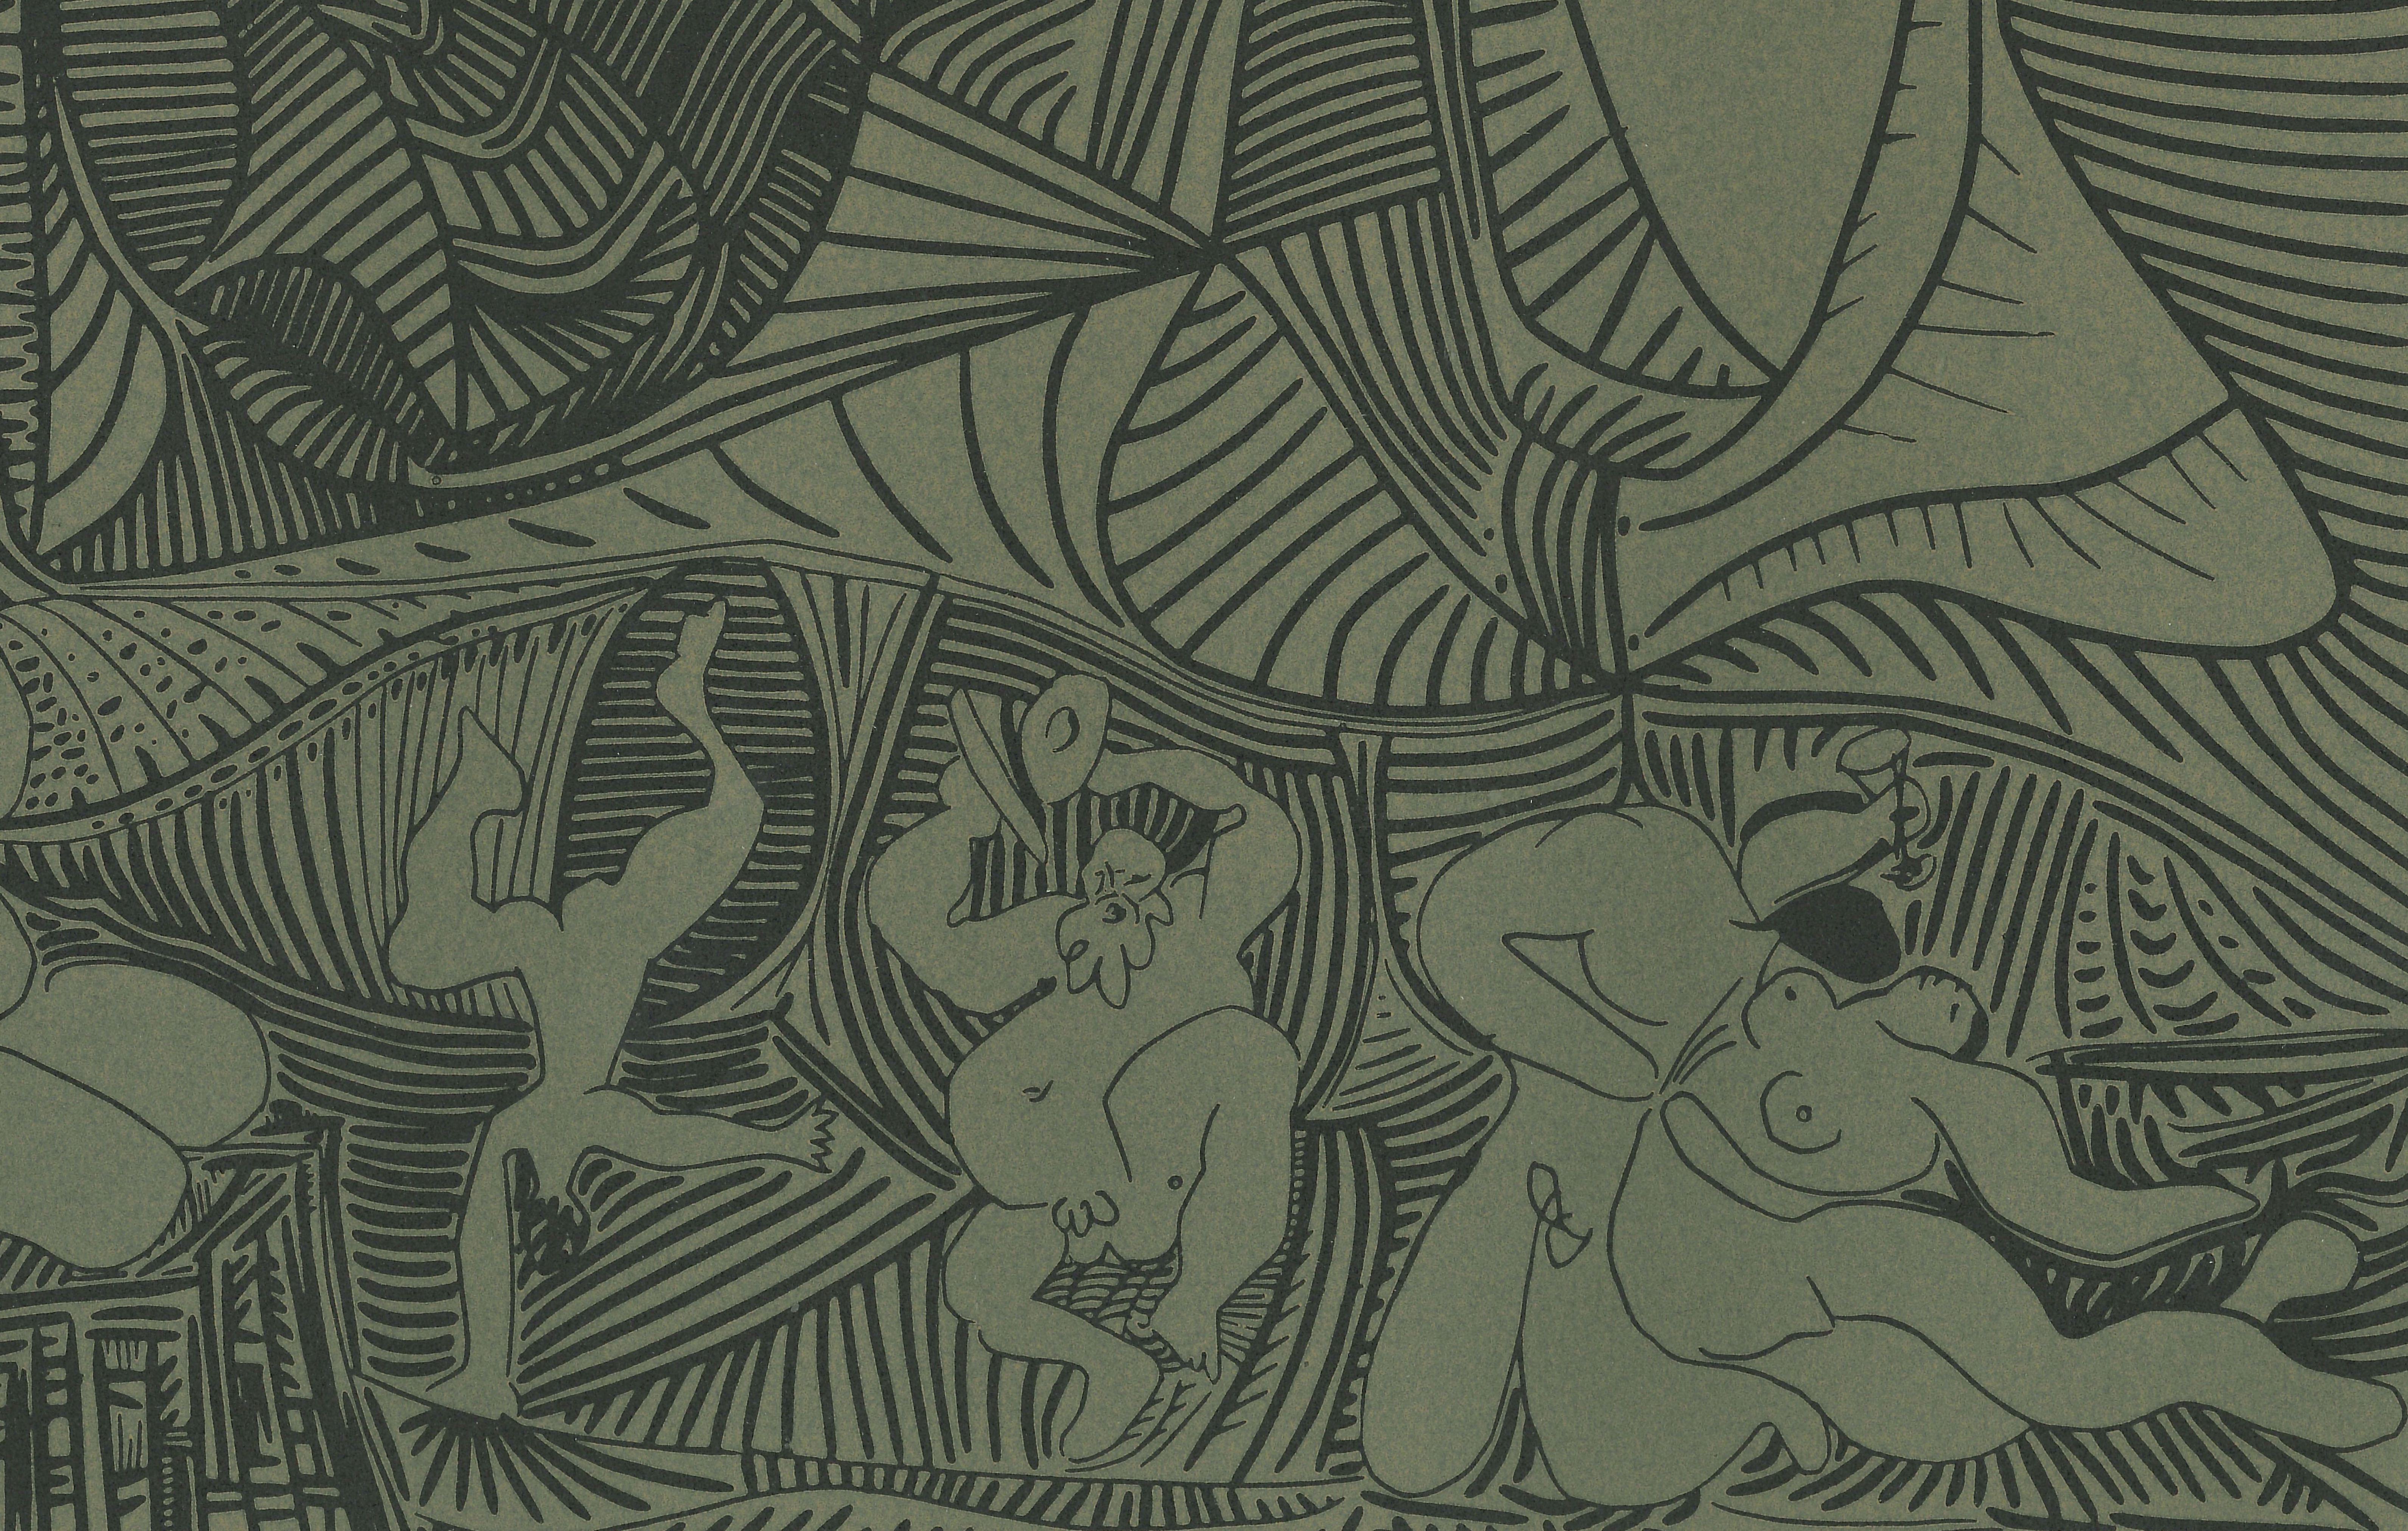 Das Bacchanale au Hibou  - Linocut-Reproduktion nach Pablo Picasso - 1962 (Kubismus), Print, von (after) Pablo Picasso